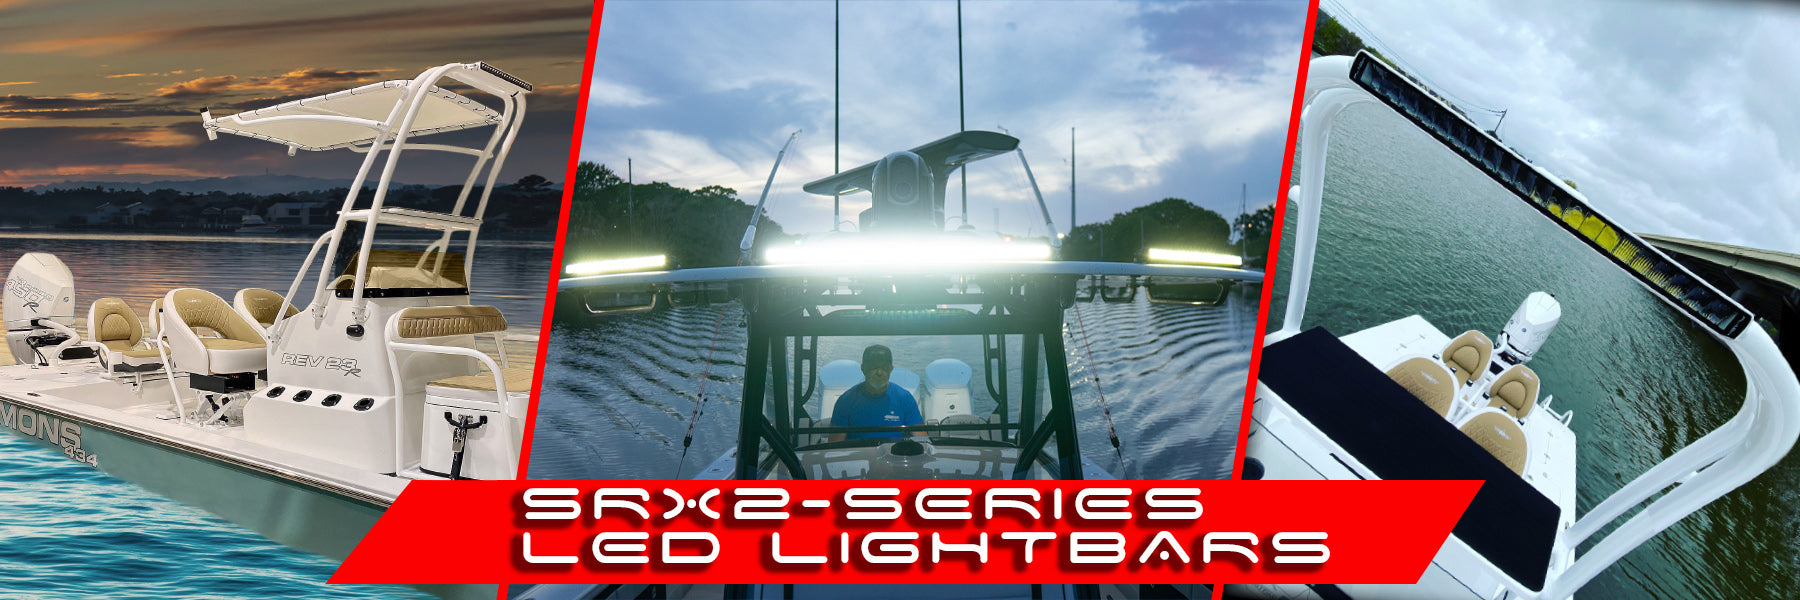 SRX2-Series LED Light Bars